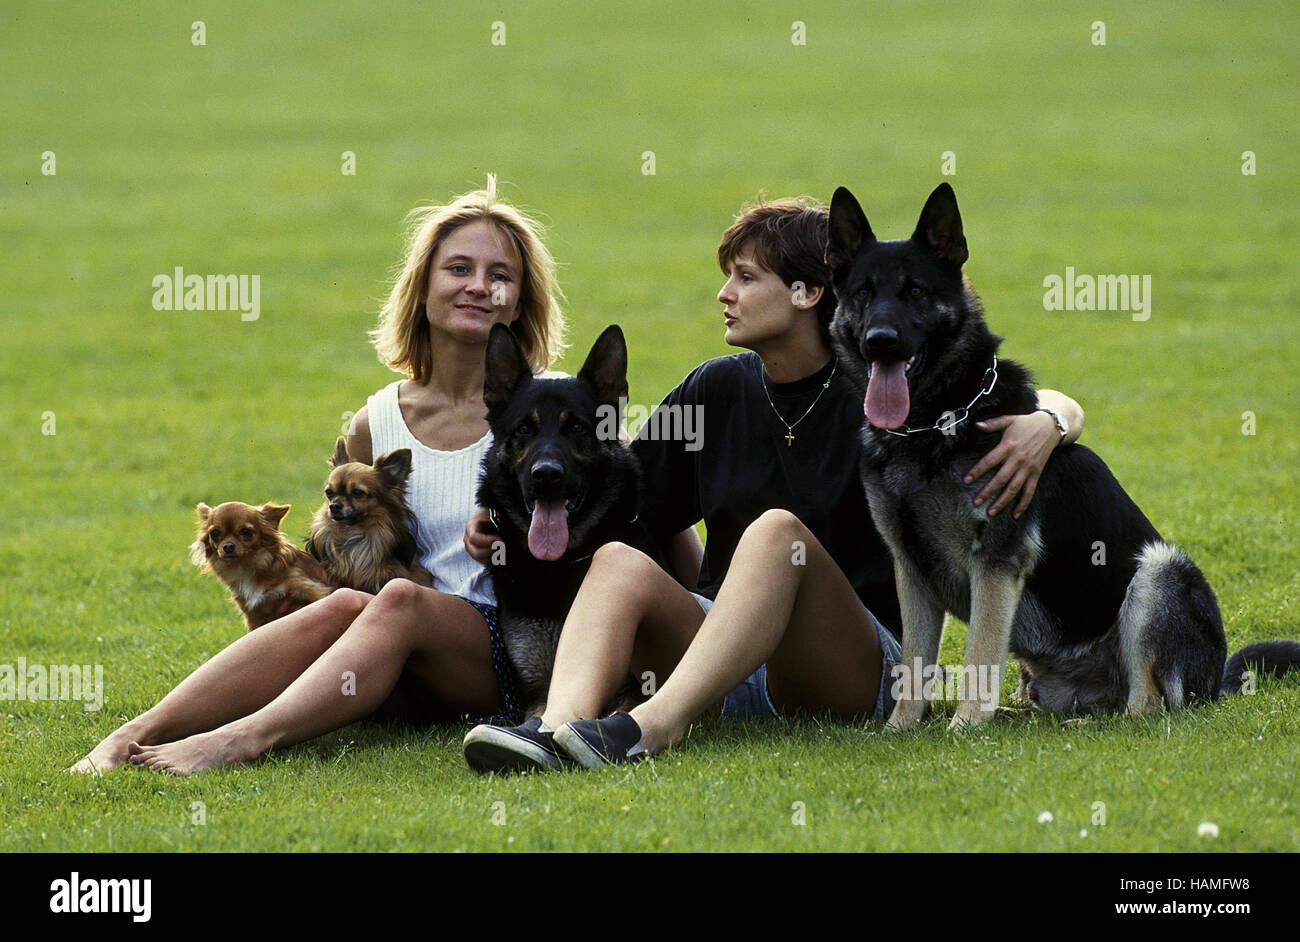 La donna e i cani / Frauen und Hunde Foto Stock